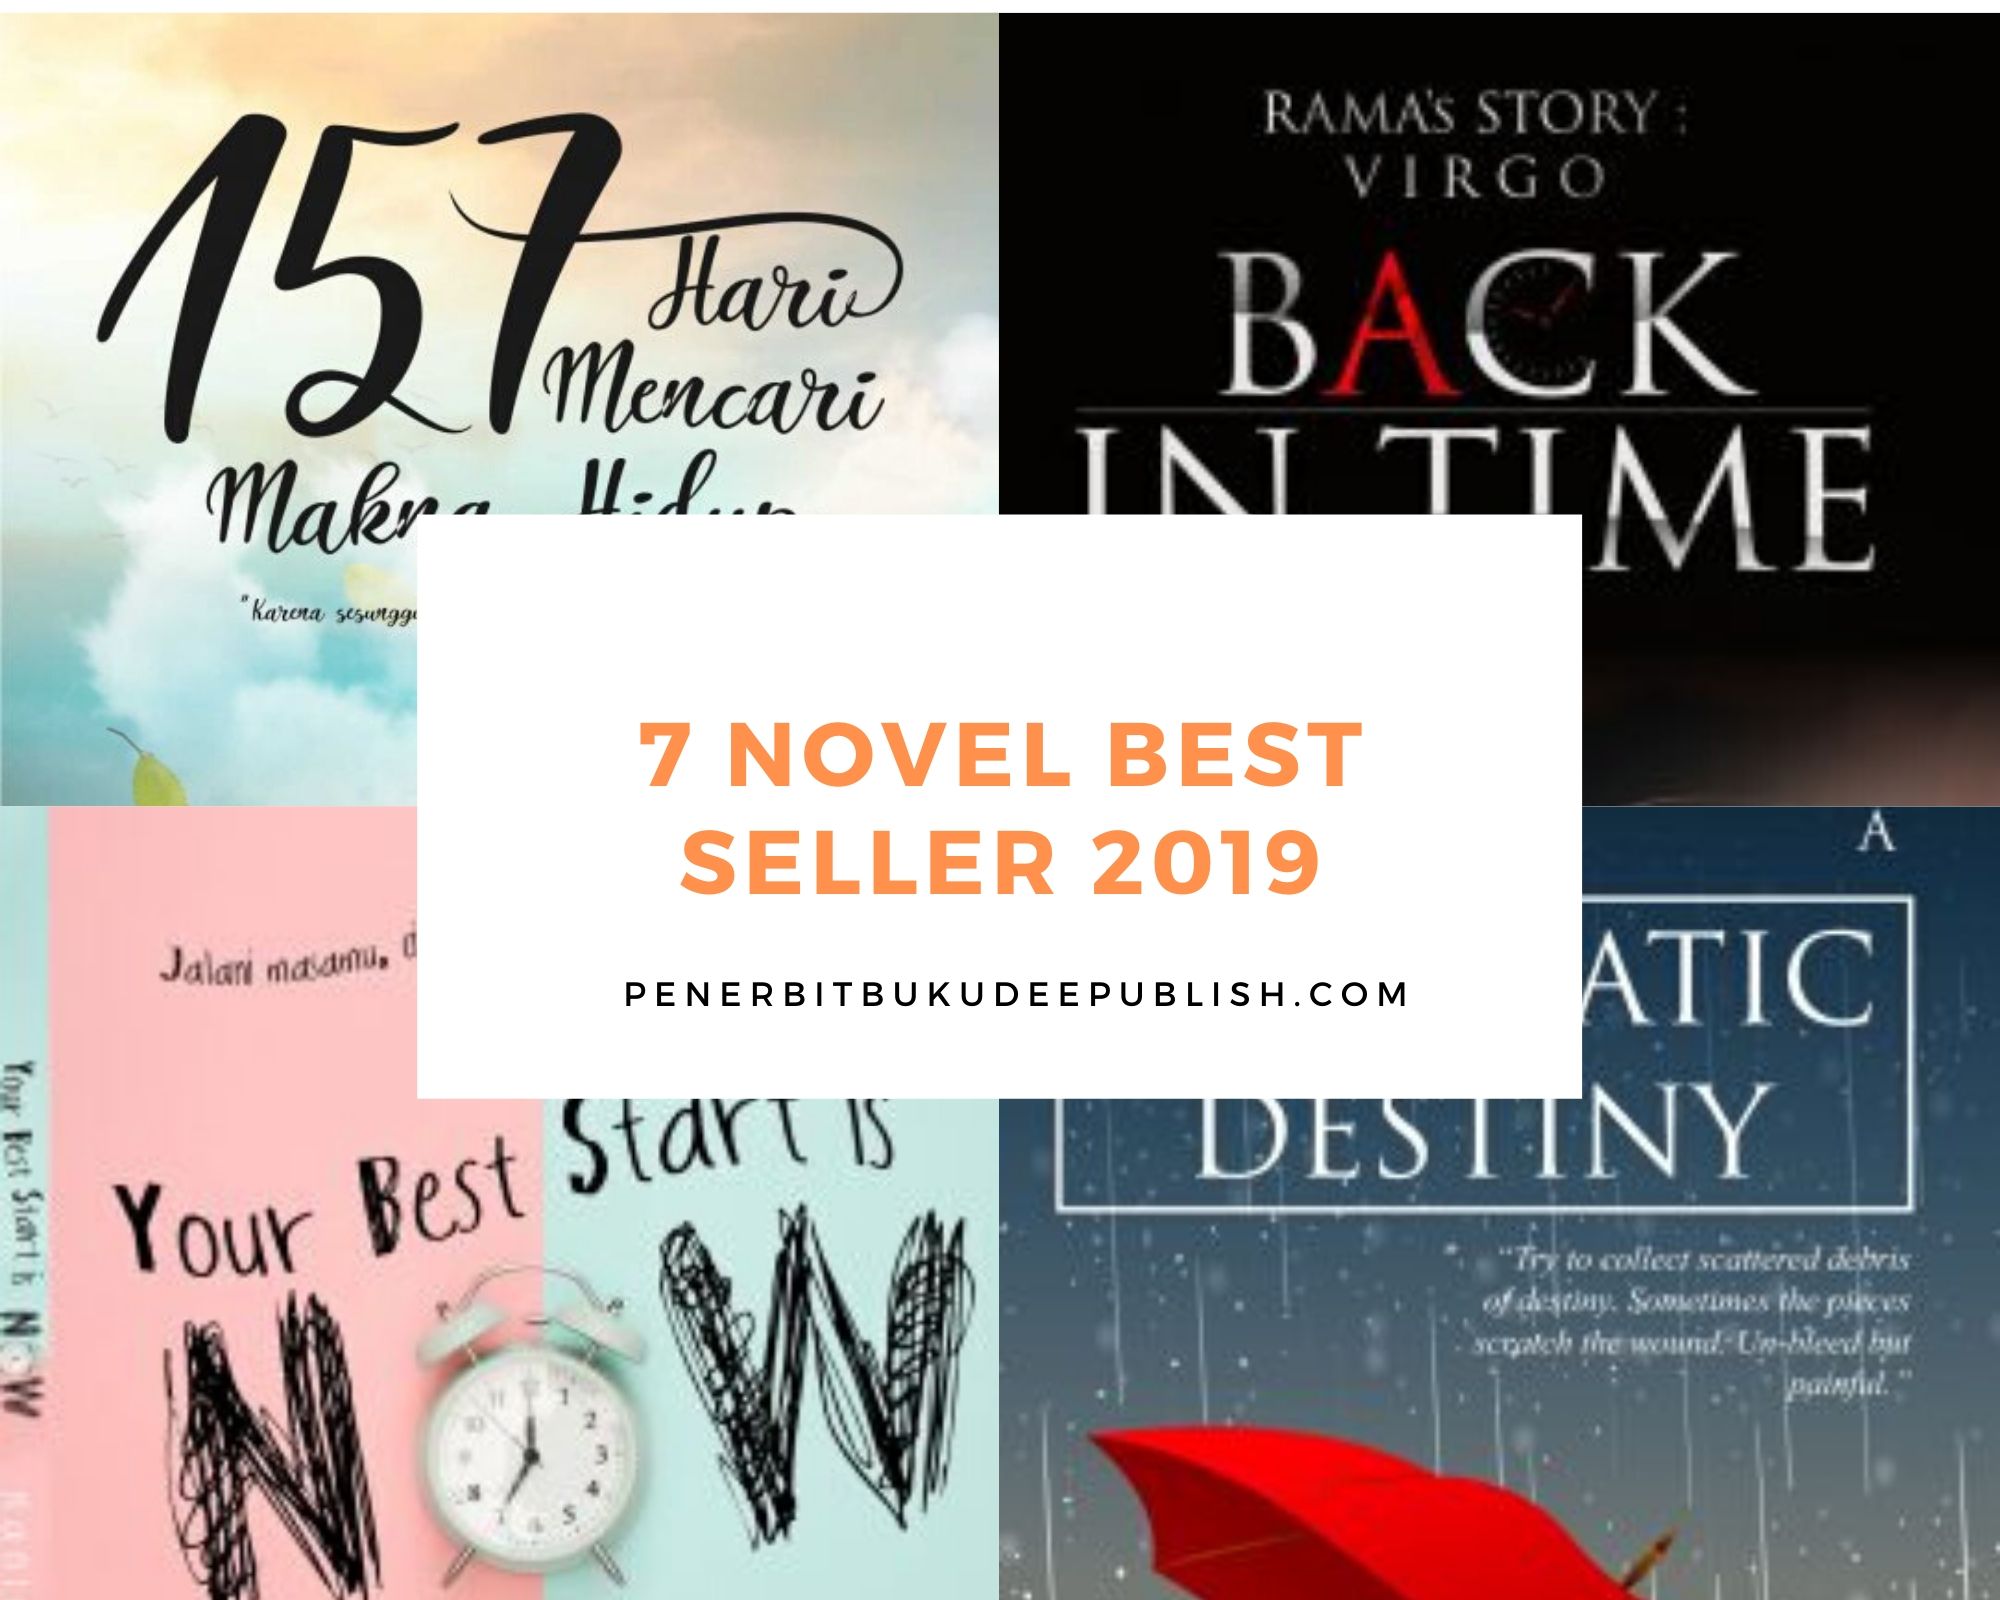 7 novel best seller 2019